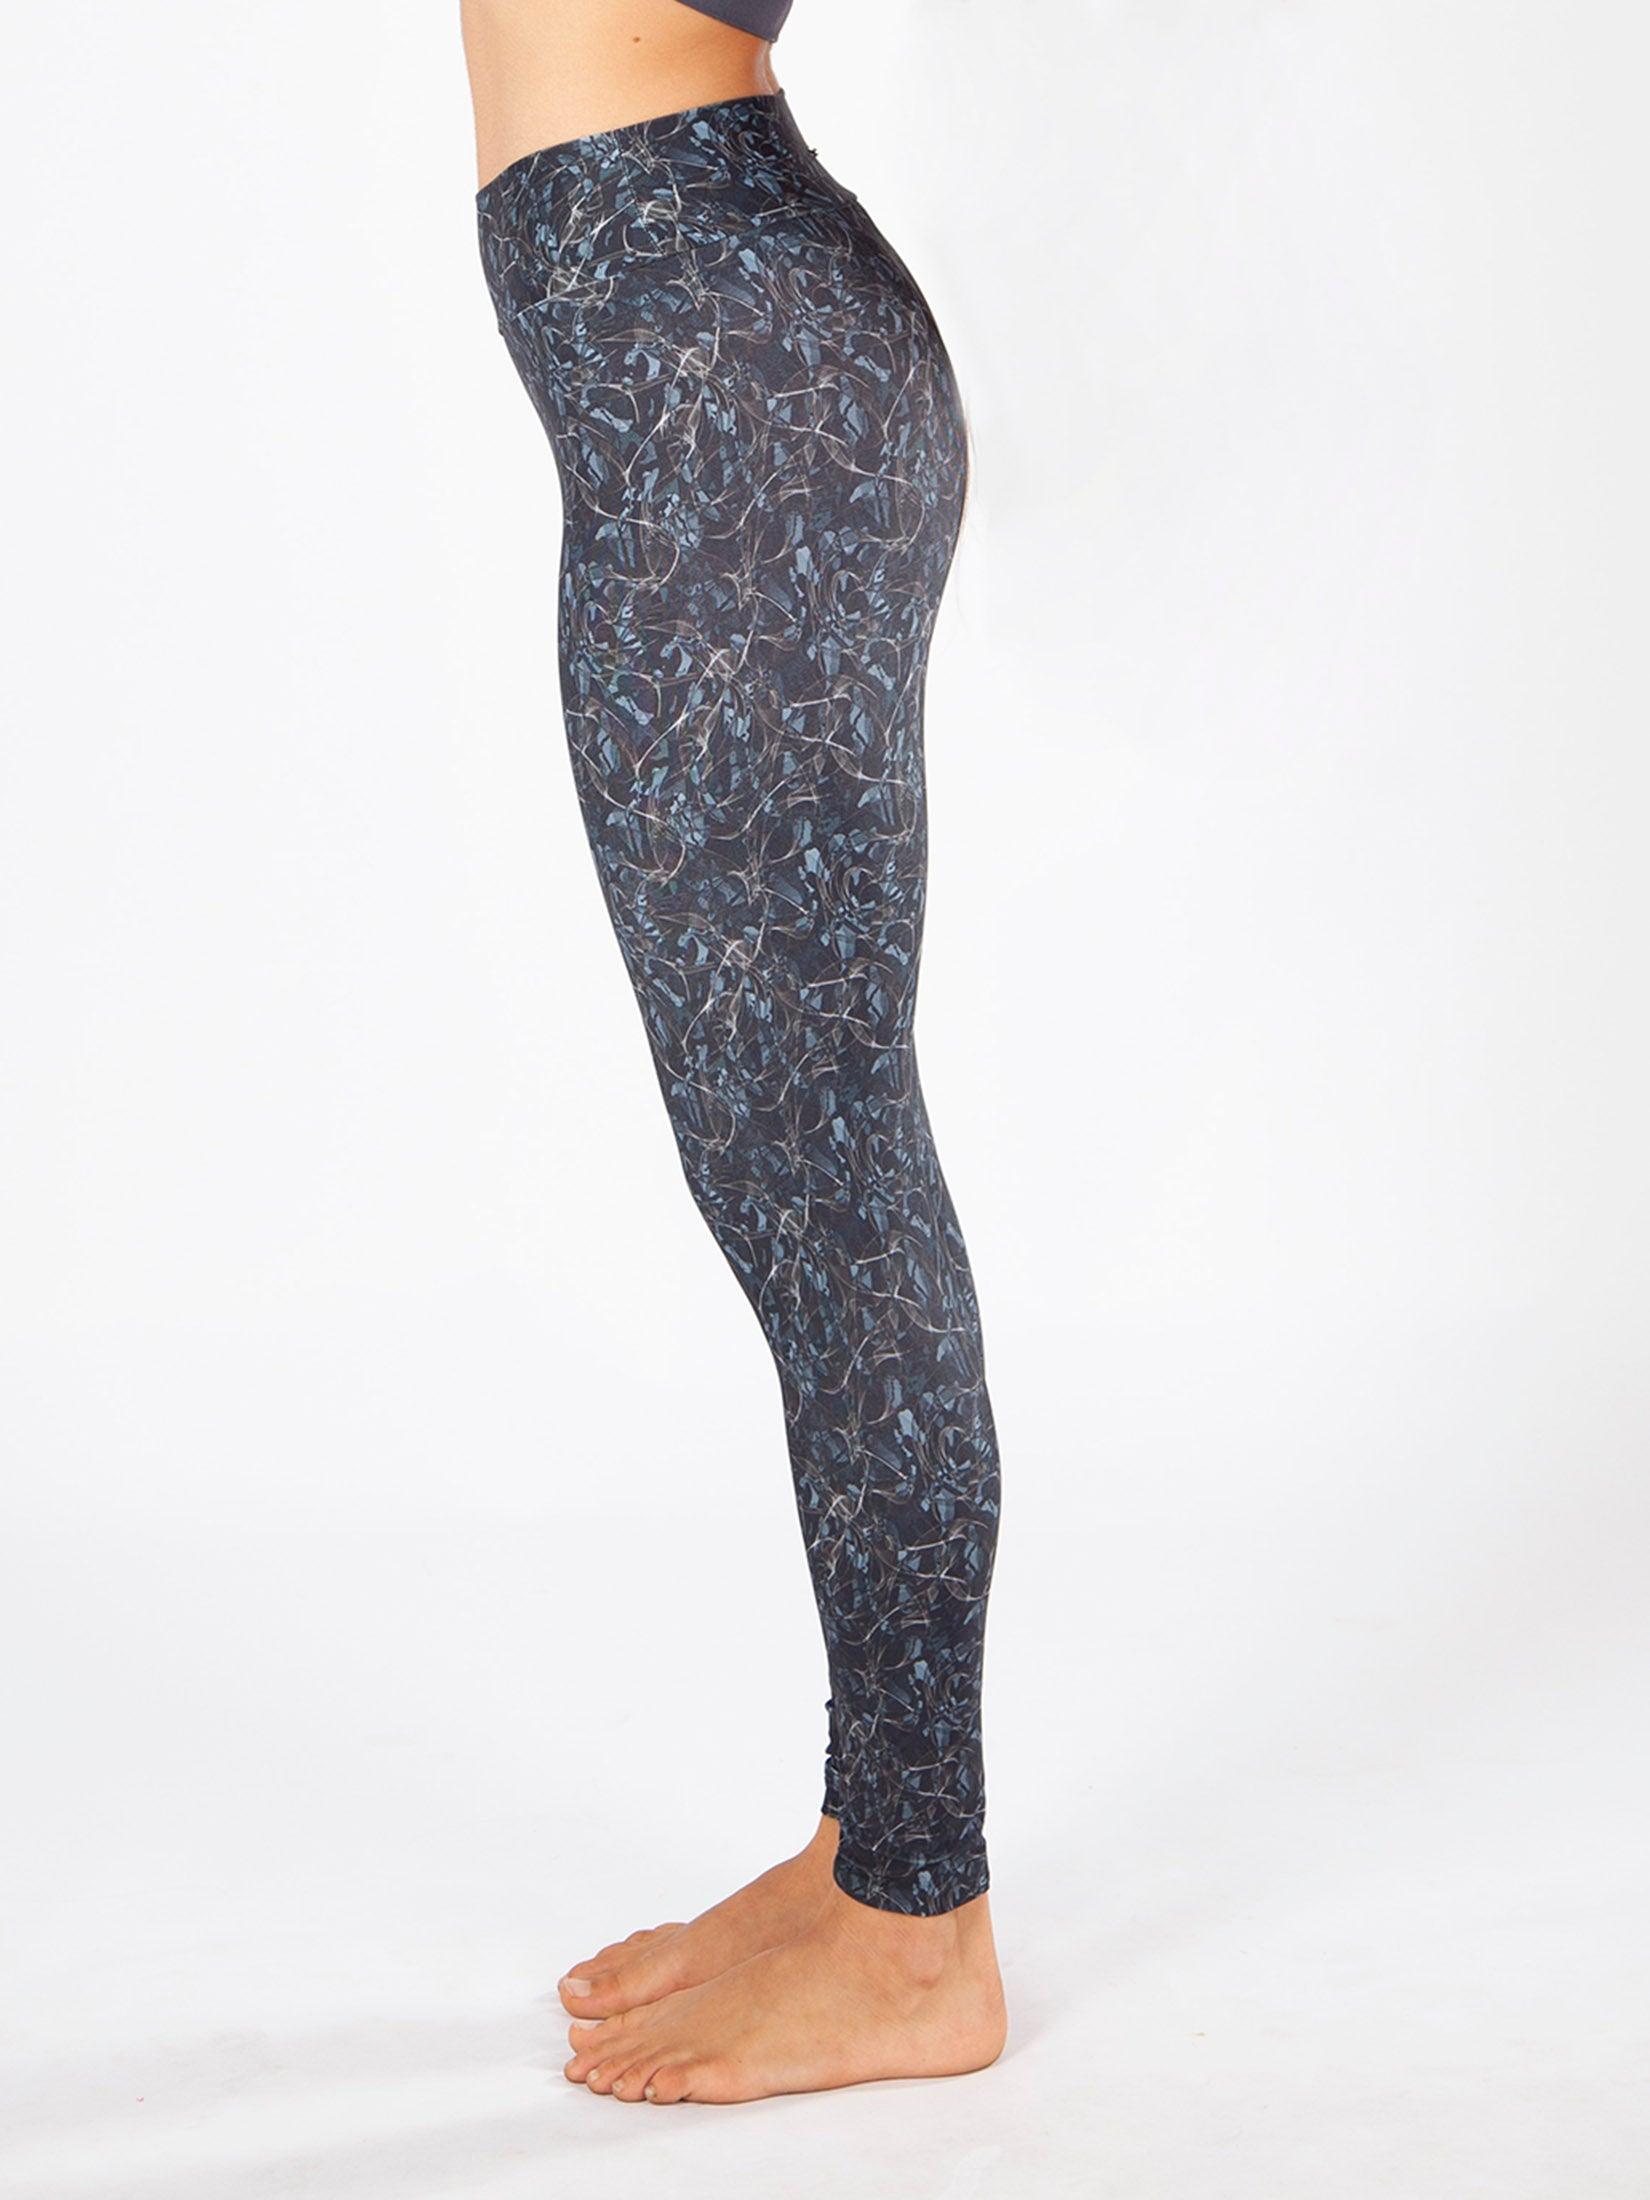 Lululemon Align Stretchy Full Length Yoga Pants - Ghana